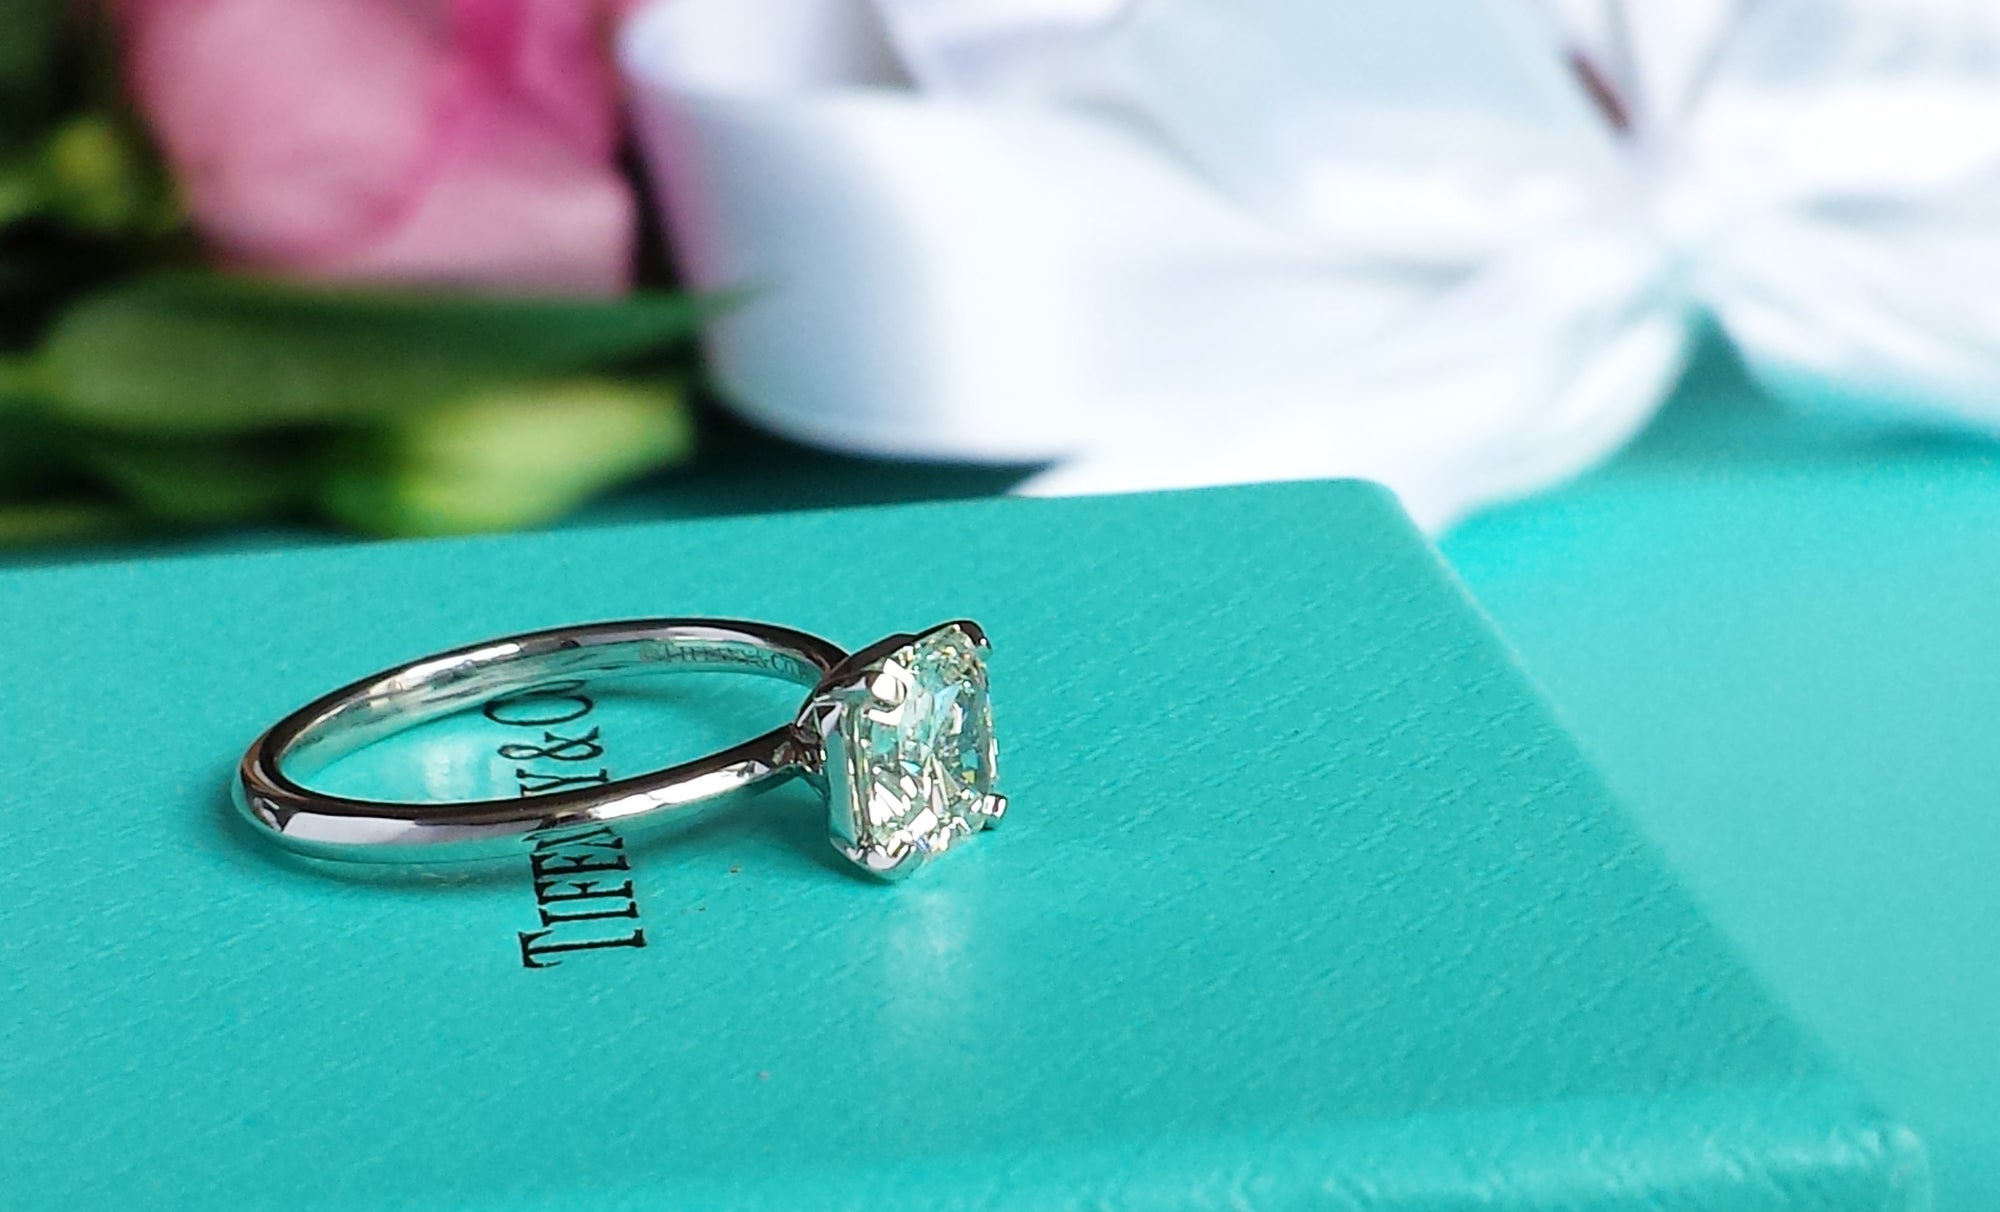 Tiffany & Co. 1.09ct I/VS1 Triple XXX 'True' Diamond Engagement Ring